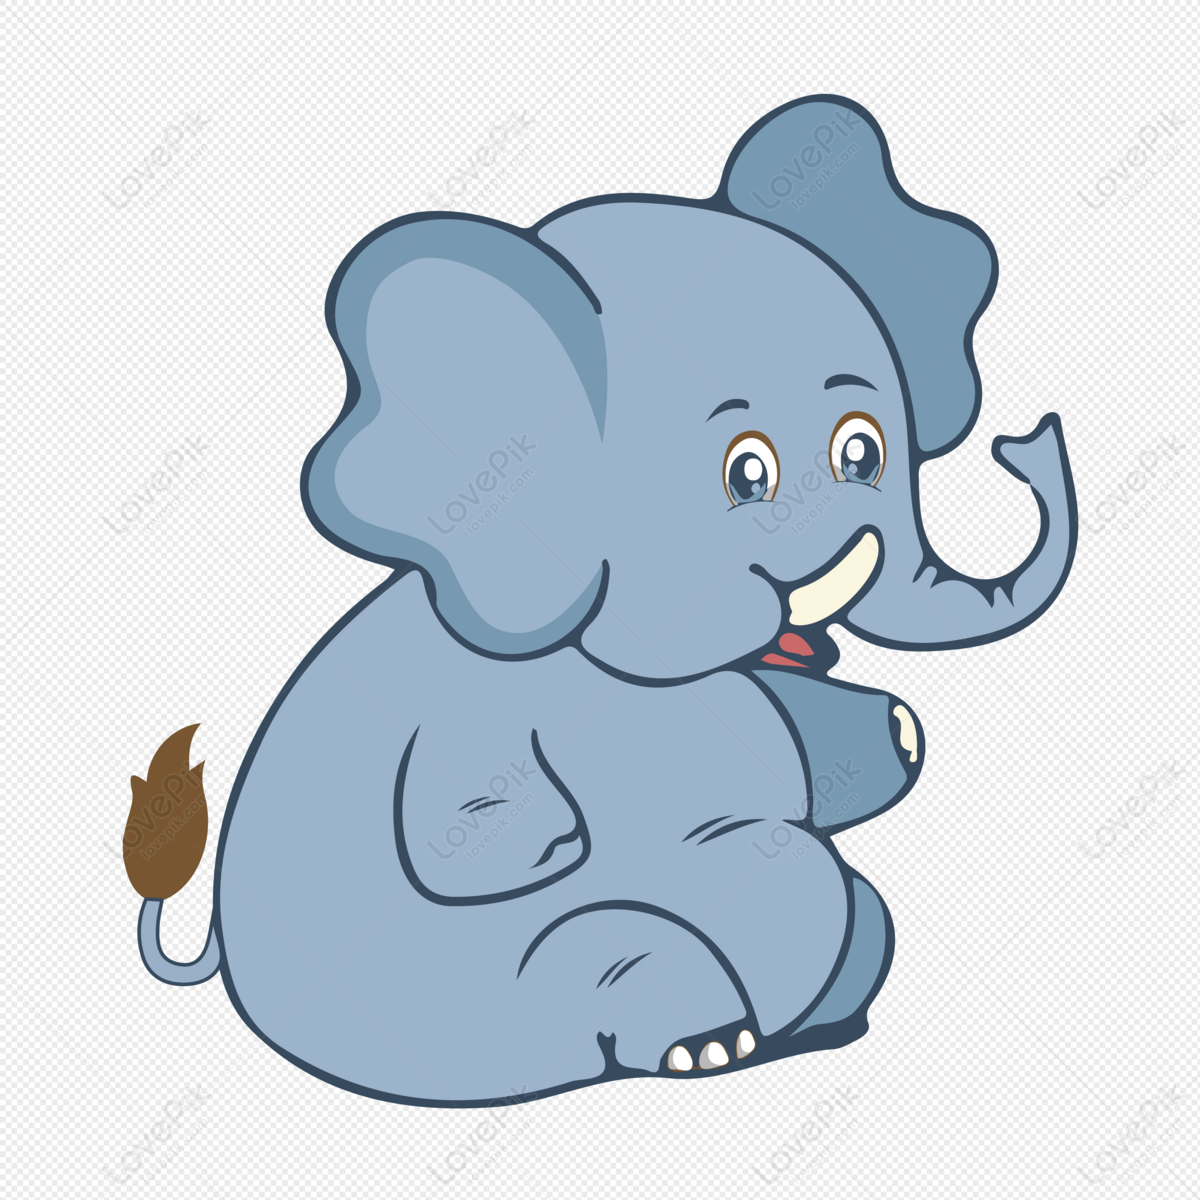 हाथ से खींचा गया कार्टून हाथी चित्र डाउनलोड_ग्राफिक्सPRFचित्र  आईडी401312745_AIचित्र प्रारूपमुफ्त की तस्वीर